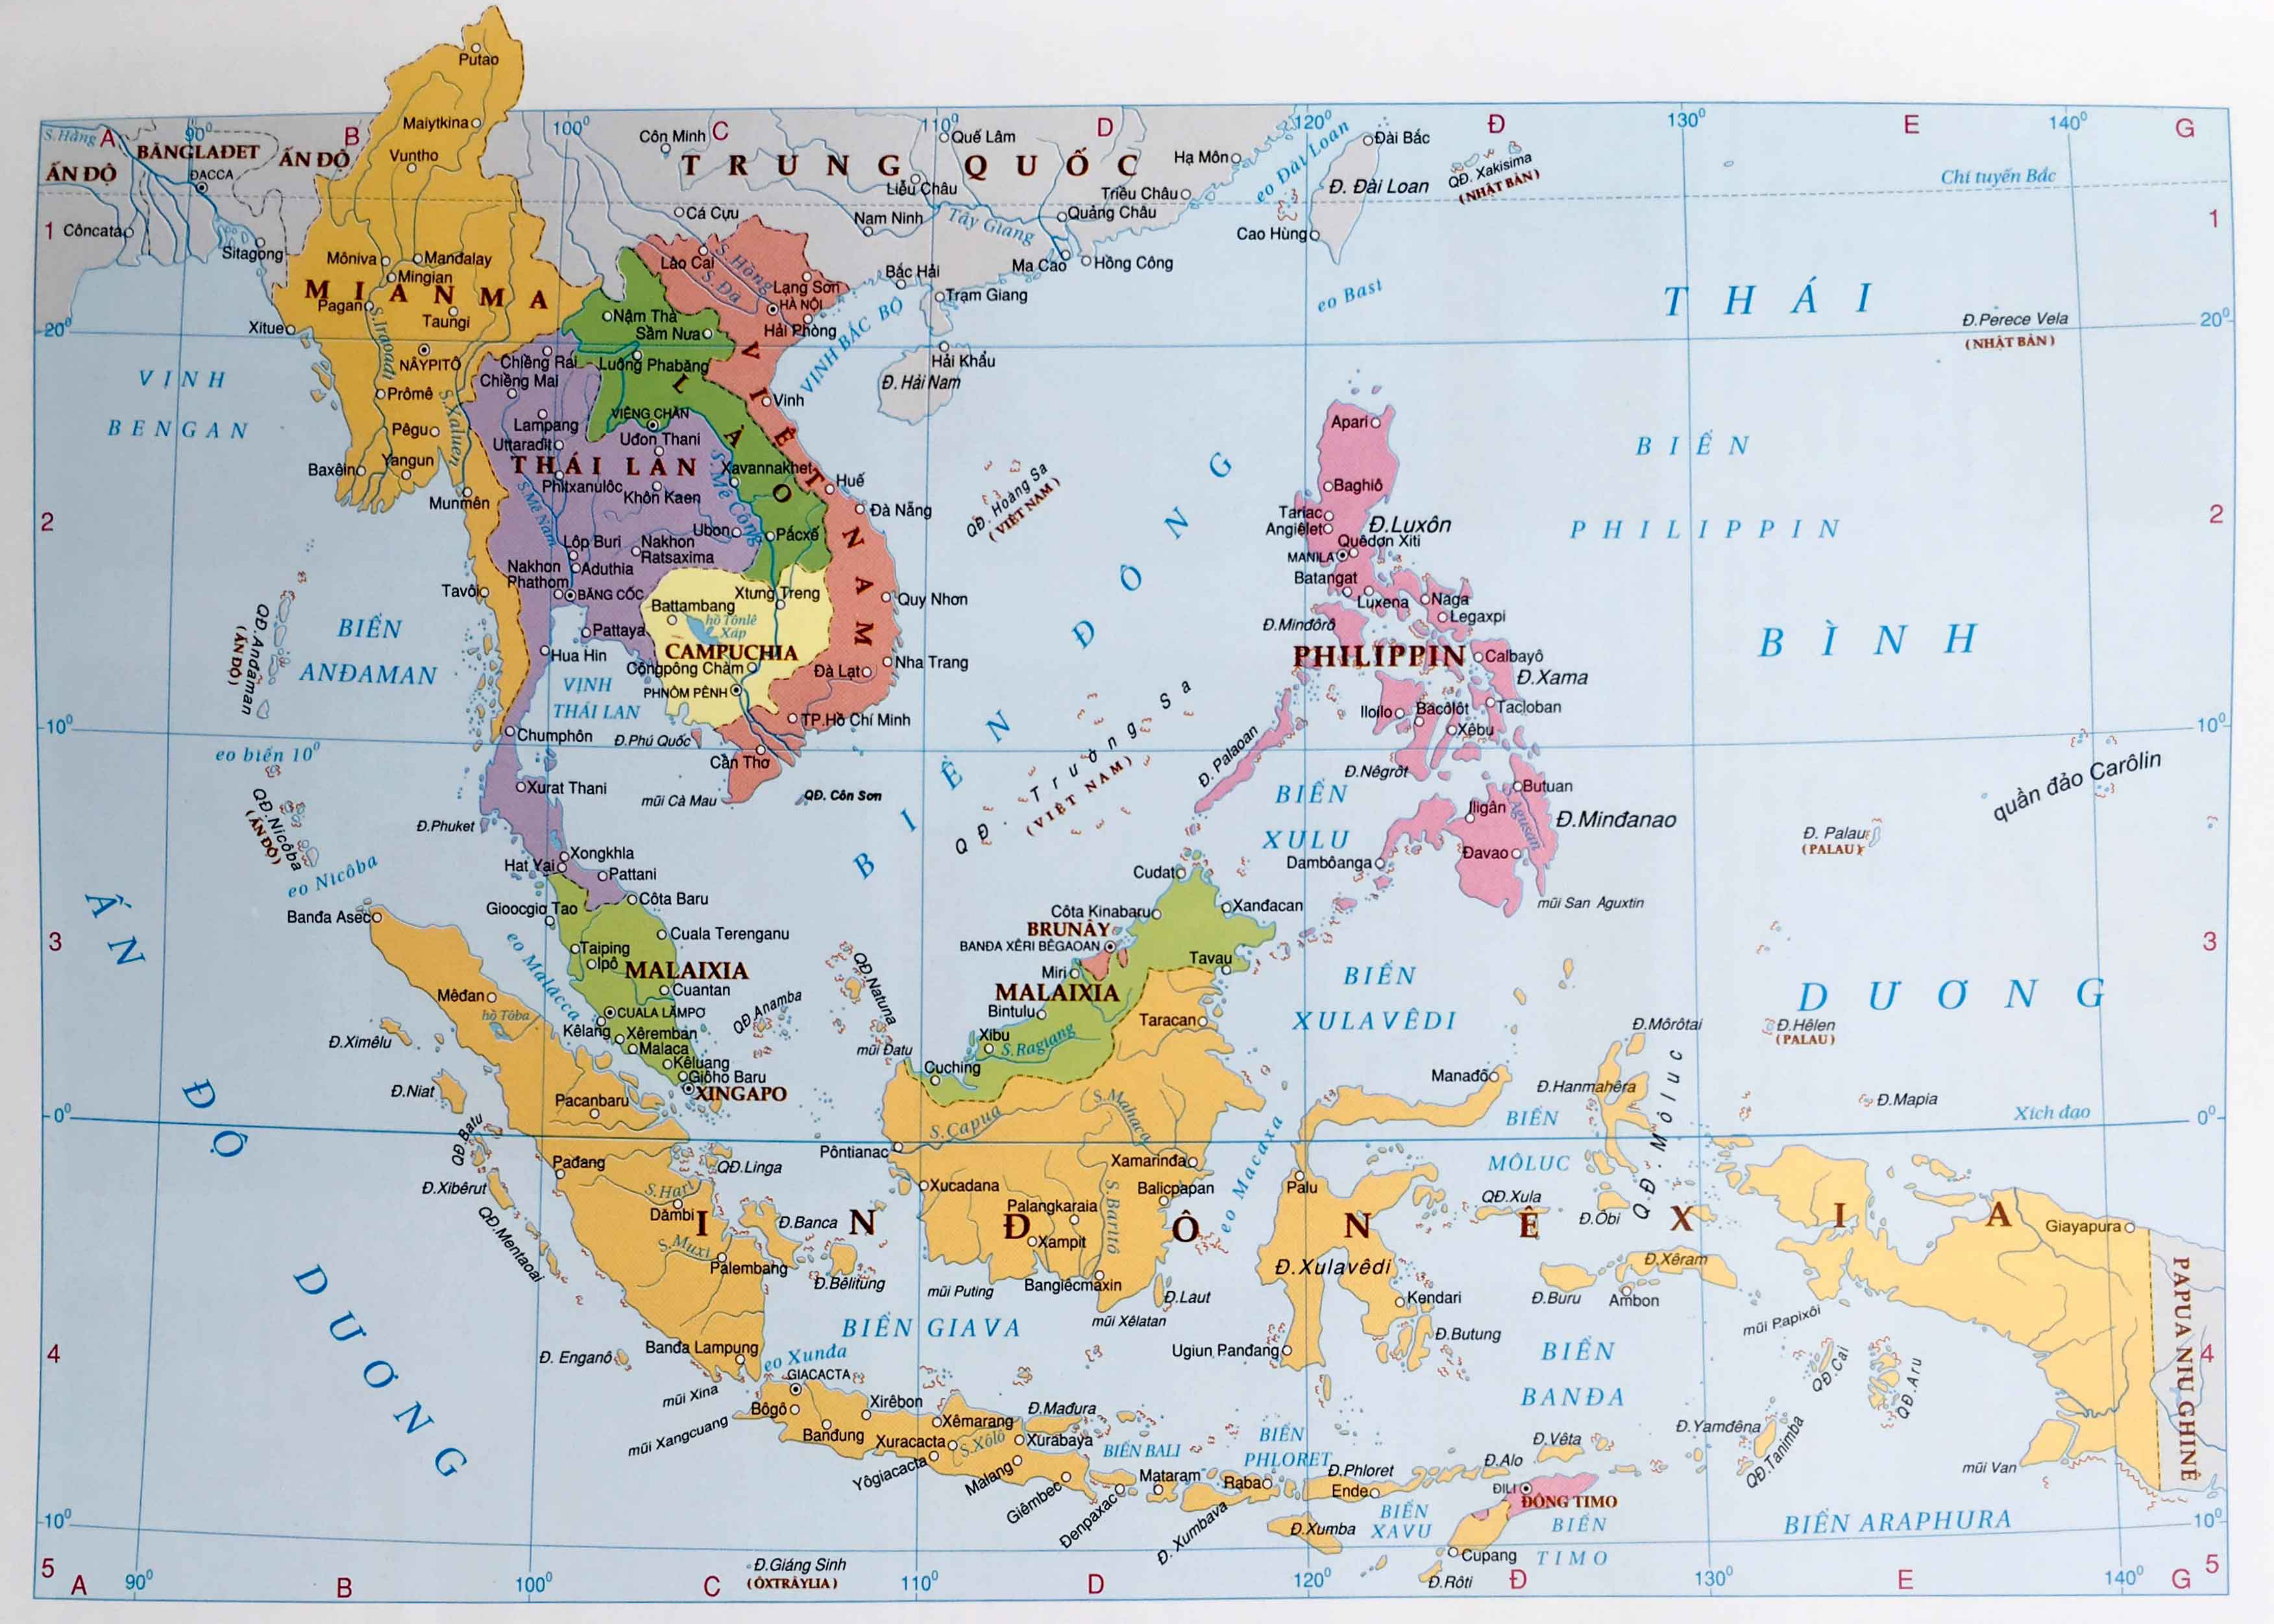 Bản đồ Châu Á 2024
Hãy cùng trải nghiệm bản đồ Châu Á 2024 và khám phá những thay đổi về địa hình, địa chất và nhân khẩu học của khu vực này. Đây là sự phát triển vượt bậc của Châu Á trong thập kỉ tới và chứa đựng bao điều thú vị đang chờ đón bạn!